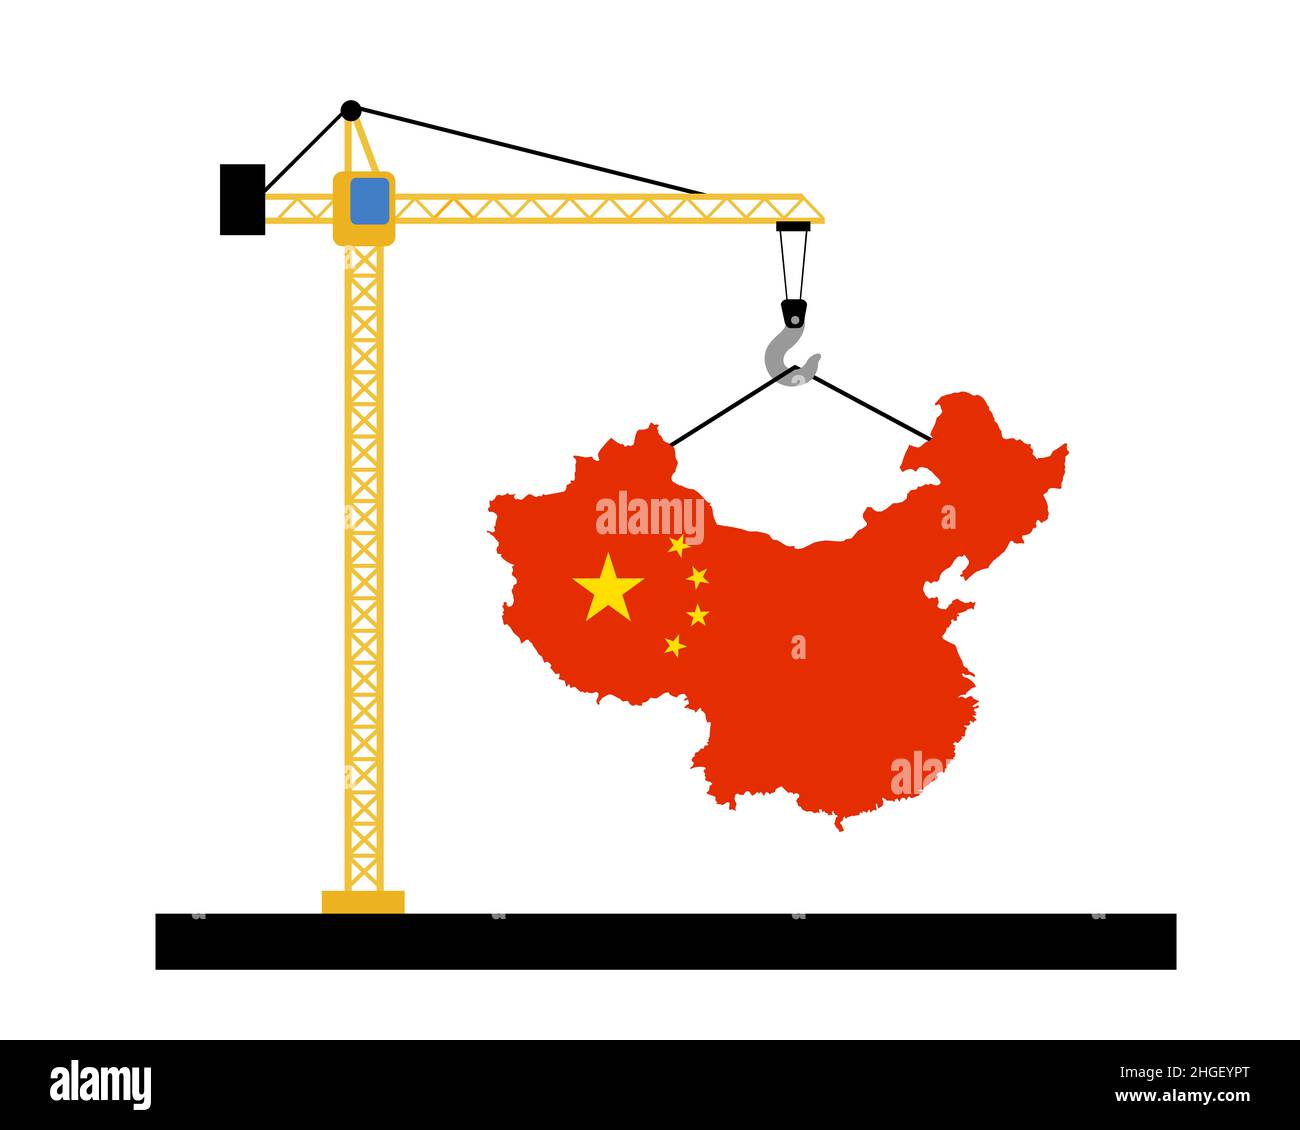 China como país y estado emergentes y en desarrollo. Auge de la inversión en construcción y el desarrollo como metáfora de la prosperidad, la progresión, modernizat Foto de stock